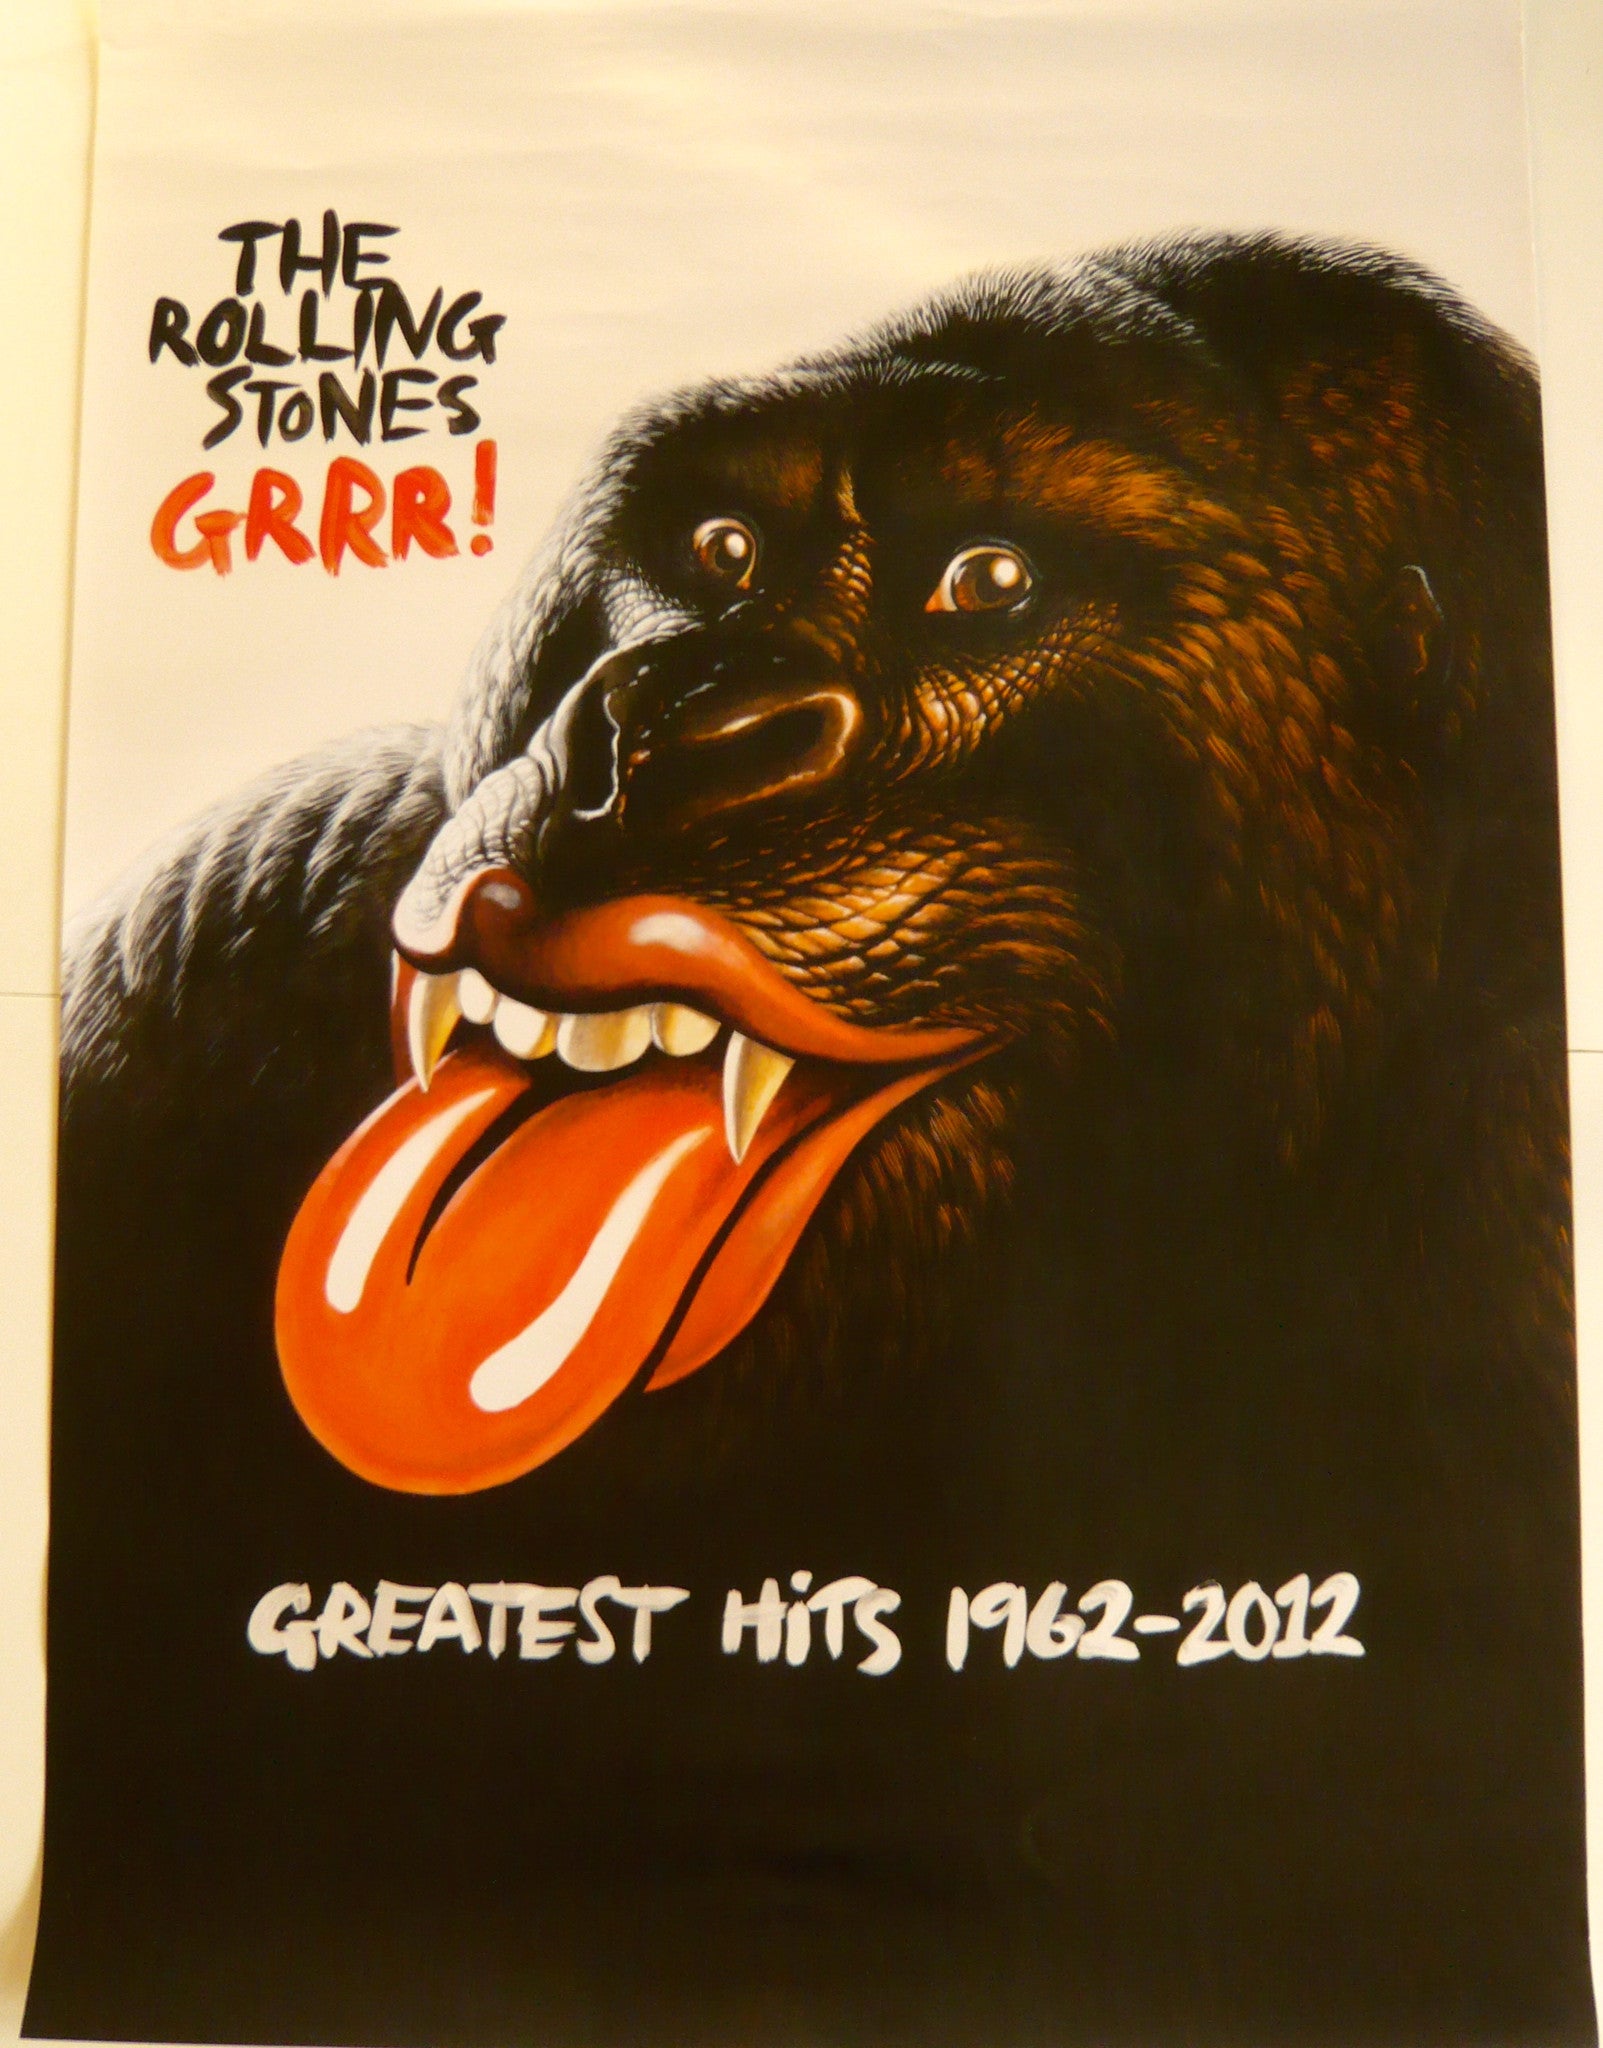 Rolling Stones - Grrr! - Poster.